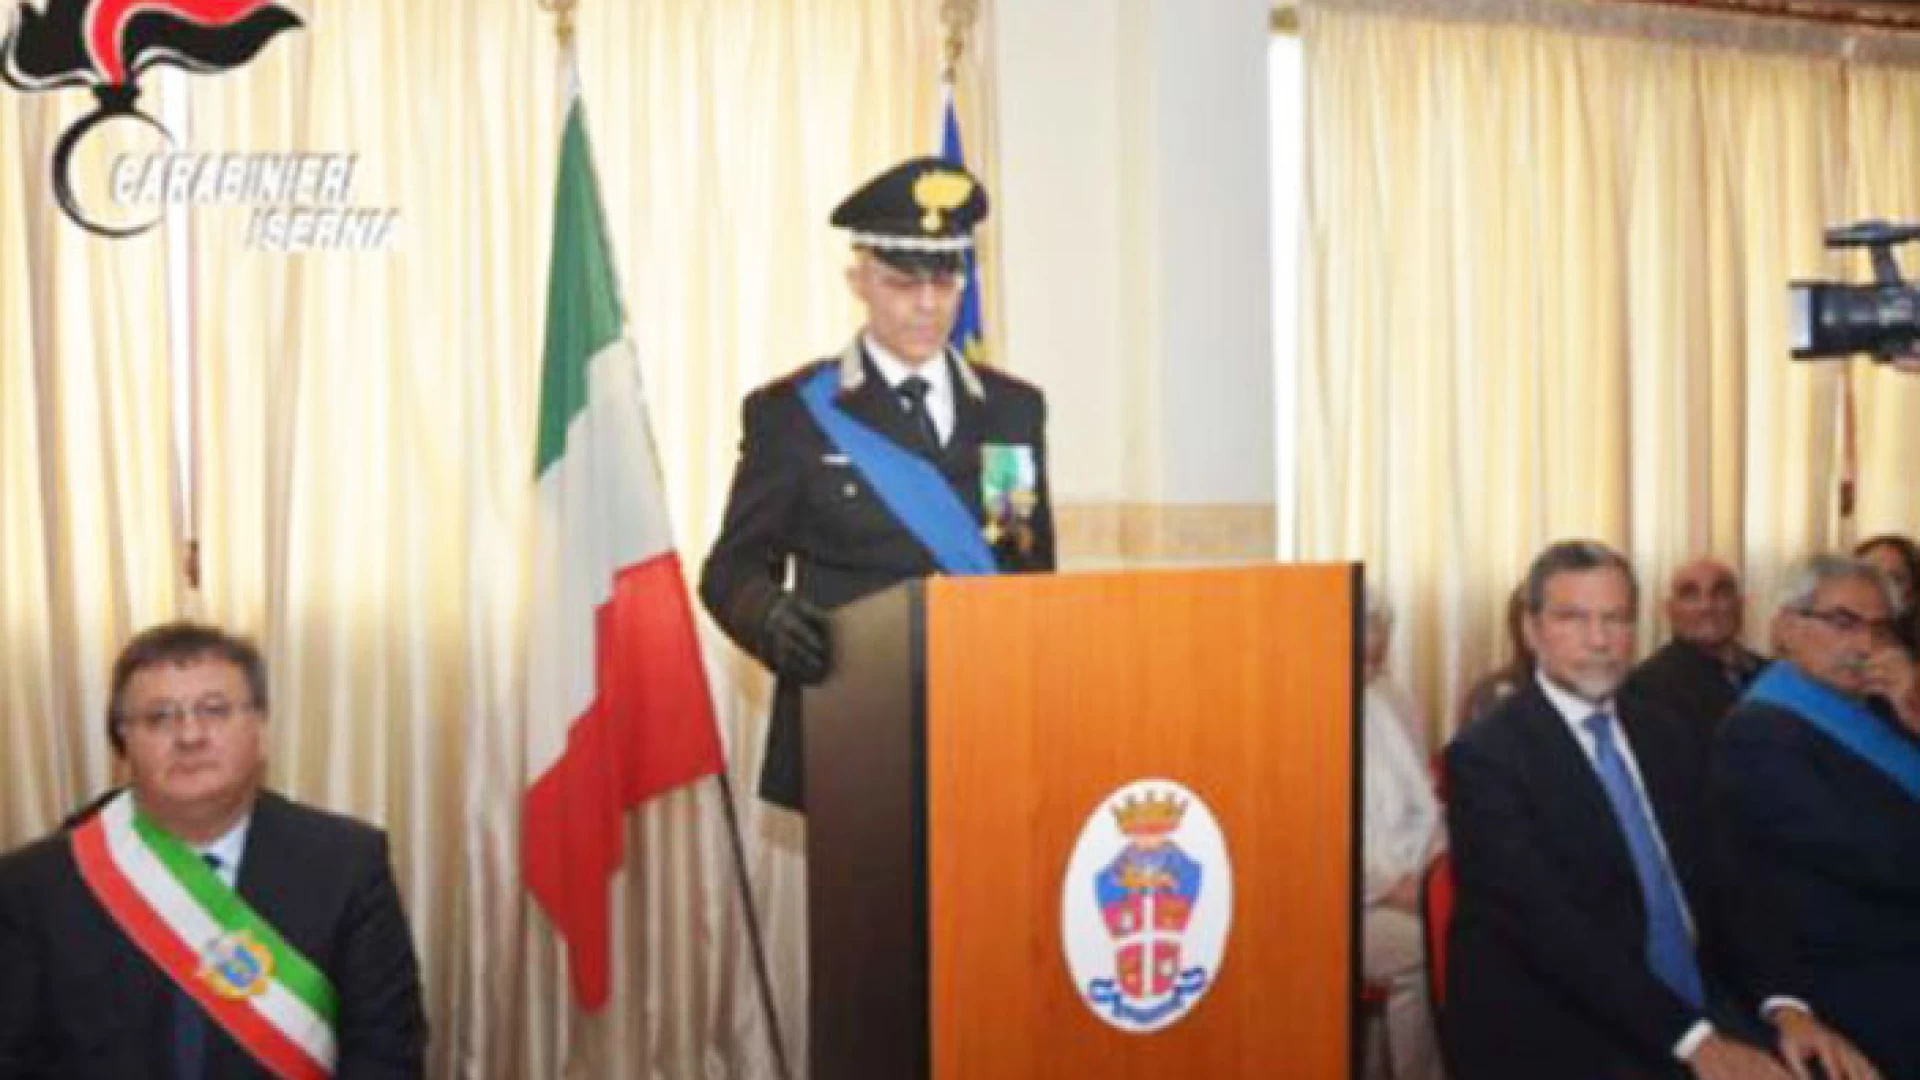 Isernia: I Carabinieri del Comando Provinciale hanno celebrato il 202° Anniversario della fondazione dell’Arma.